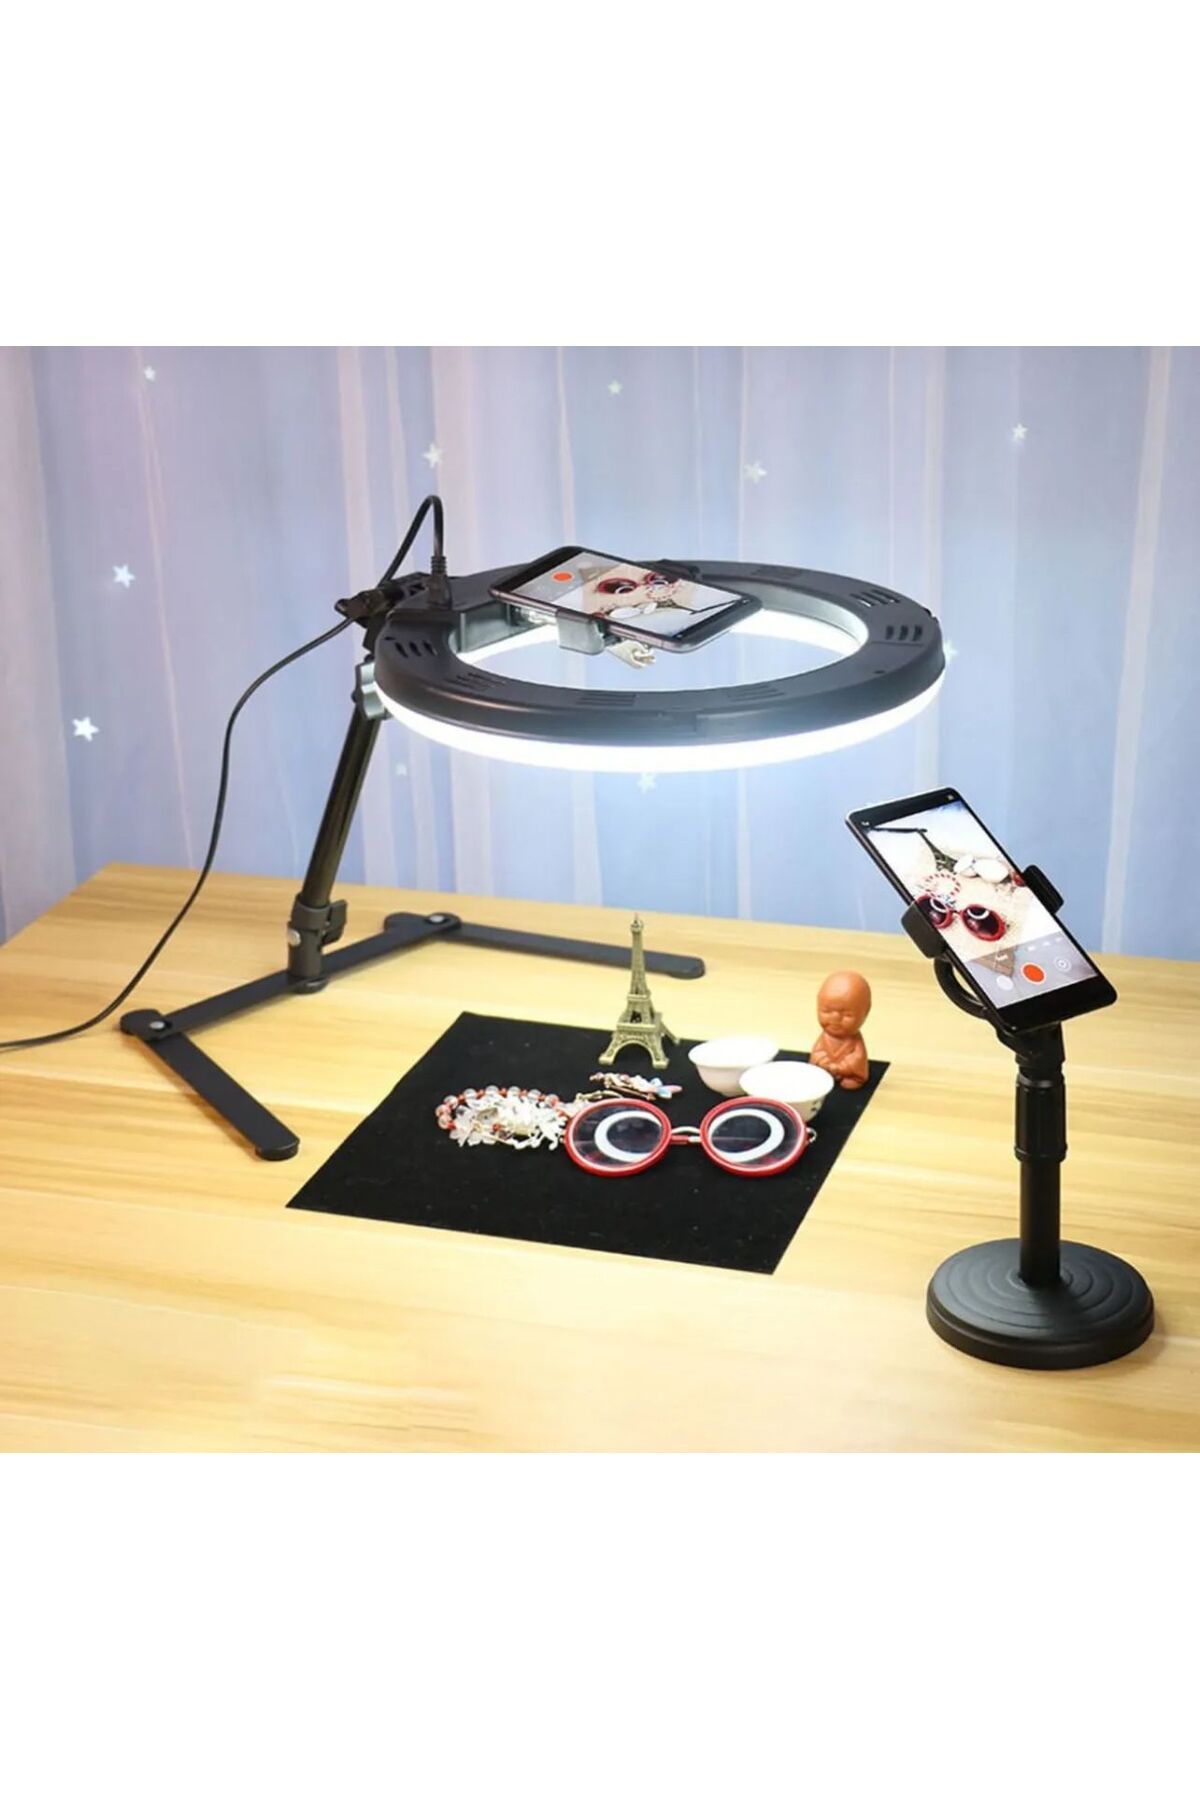 MATECHNO Masaüstü Ürün Çekim Stand Video Ve Fotoğraf Çekimi 10" Ring Light Tripod Selfie Işık Çekim Işığı